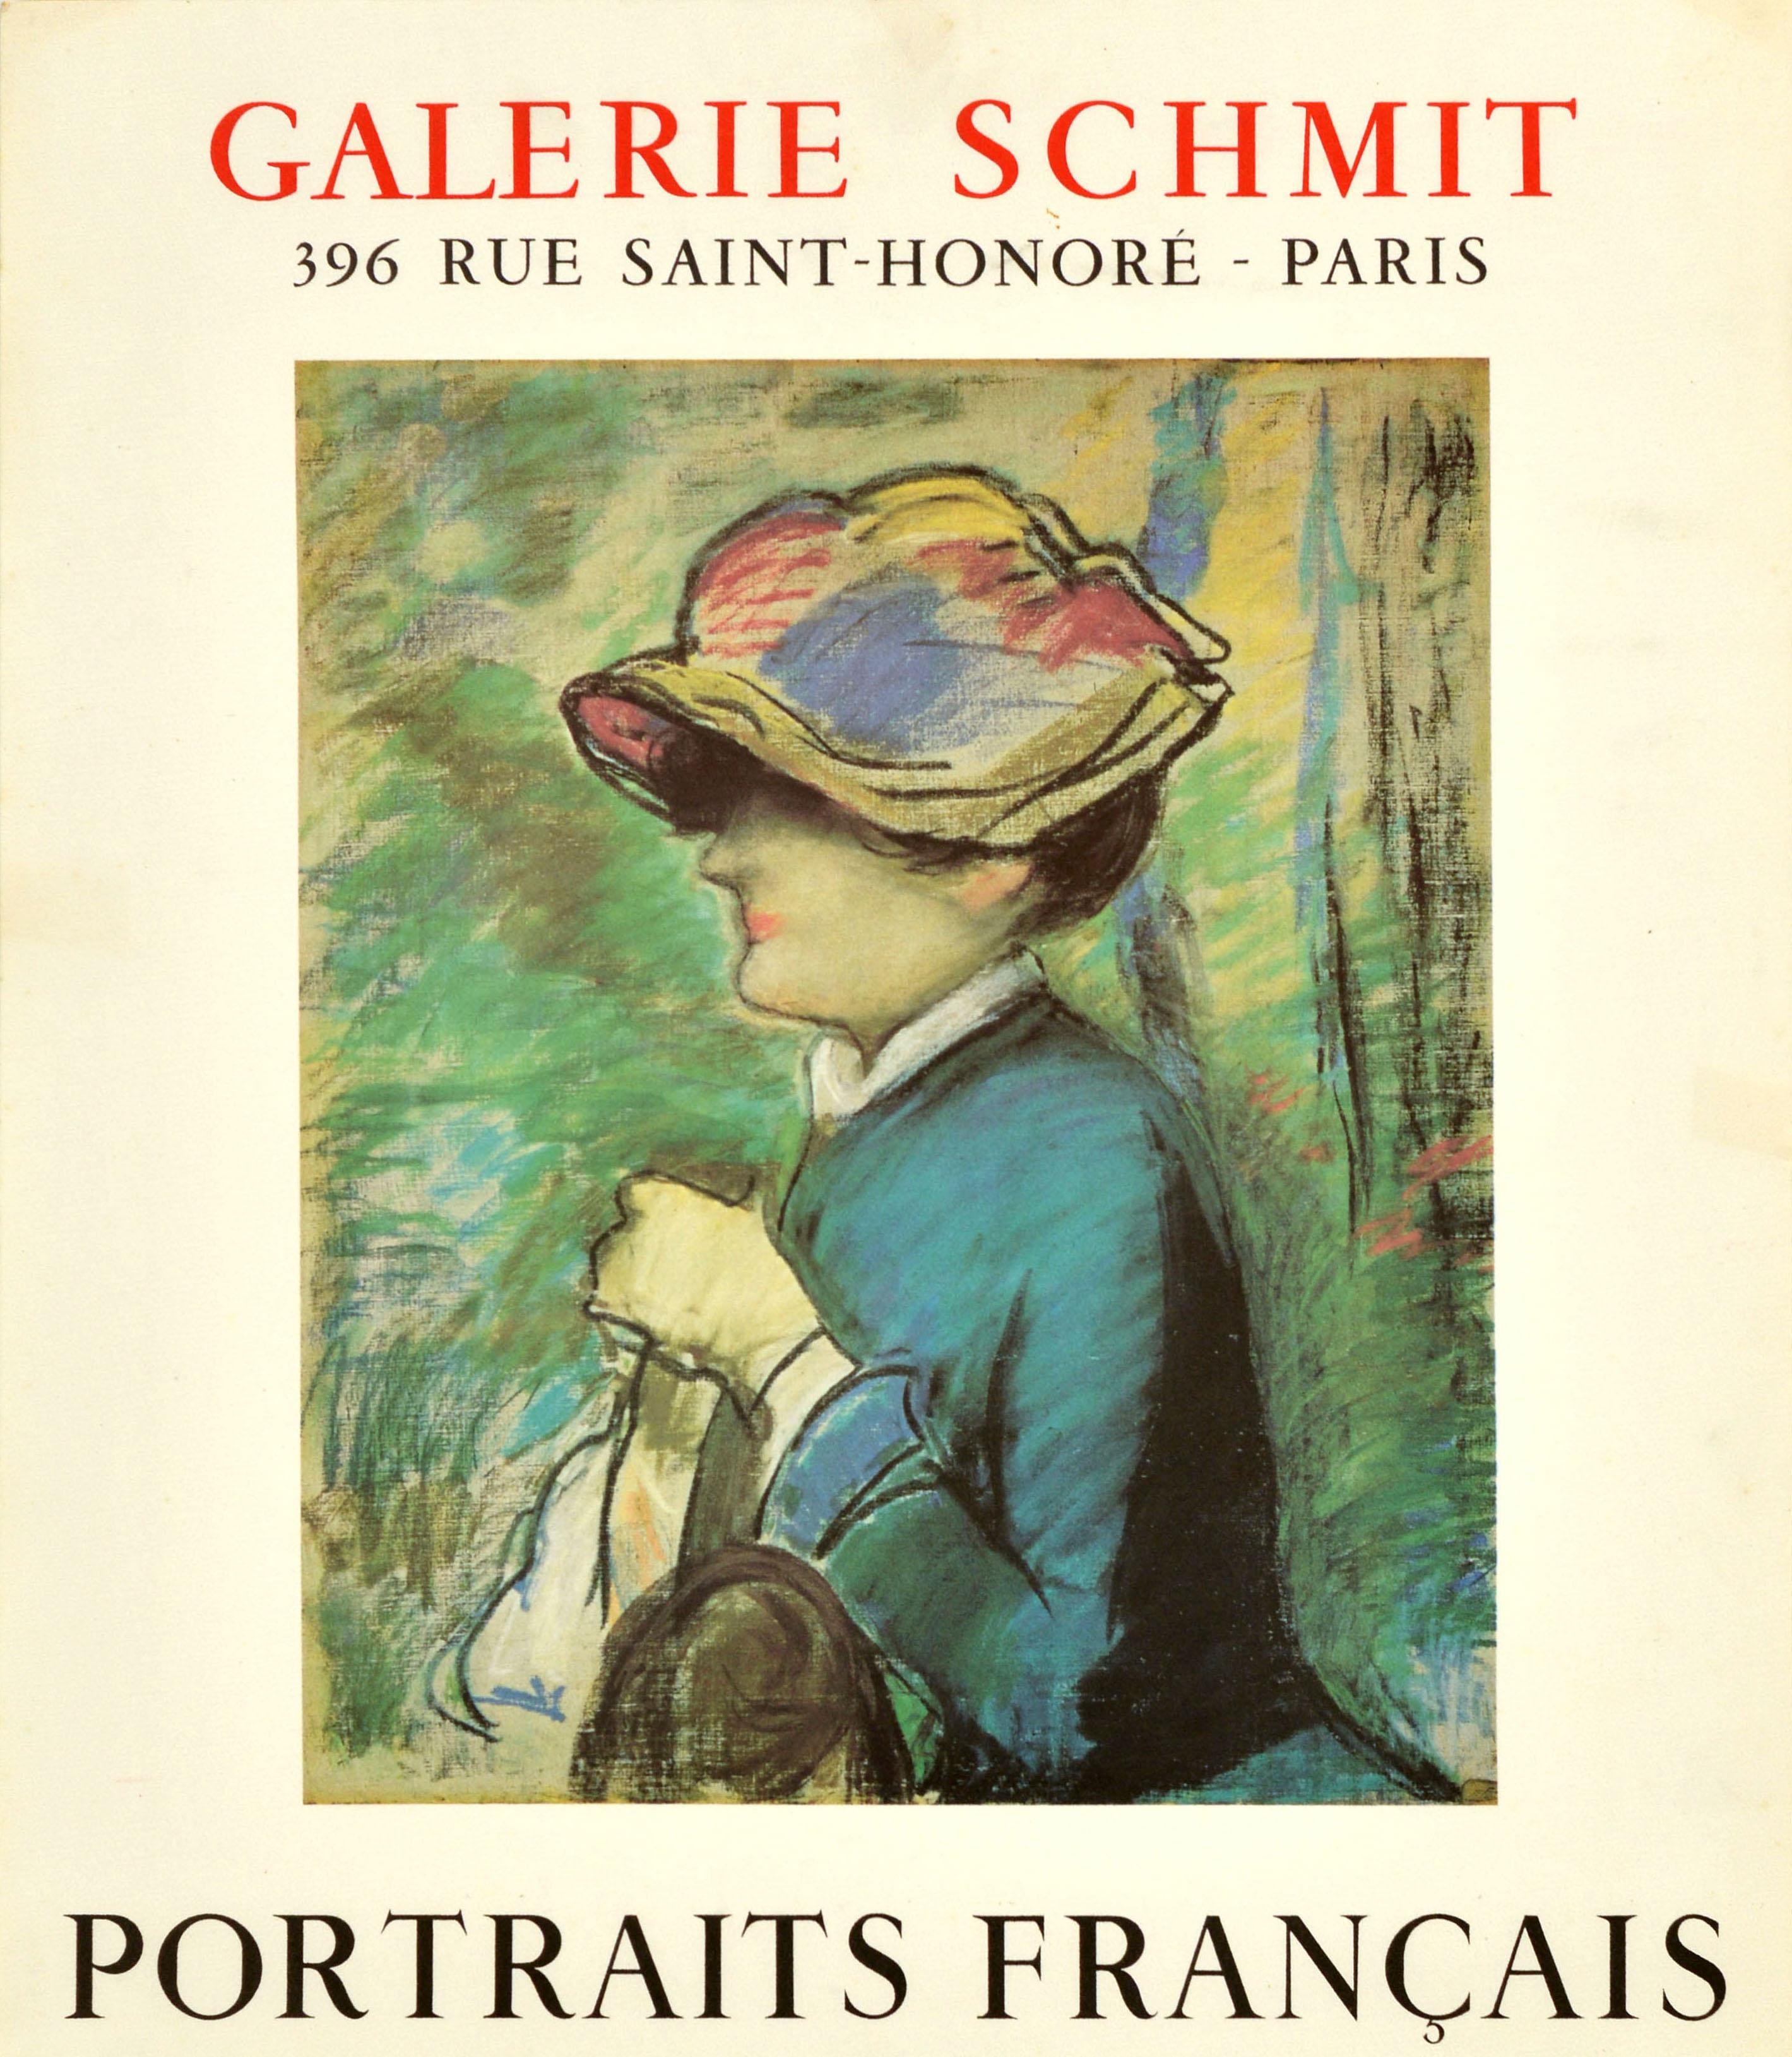 French Original Vintage Art Exhibition Poster Portraits Francais Galerie Schmit Manet For Sale